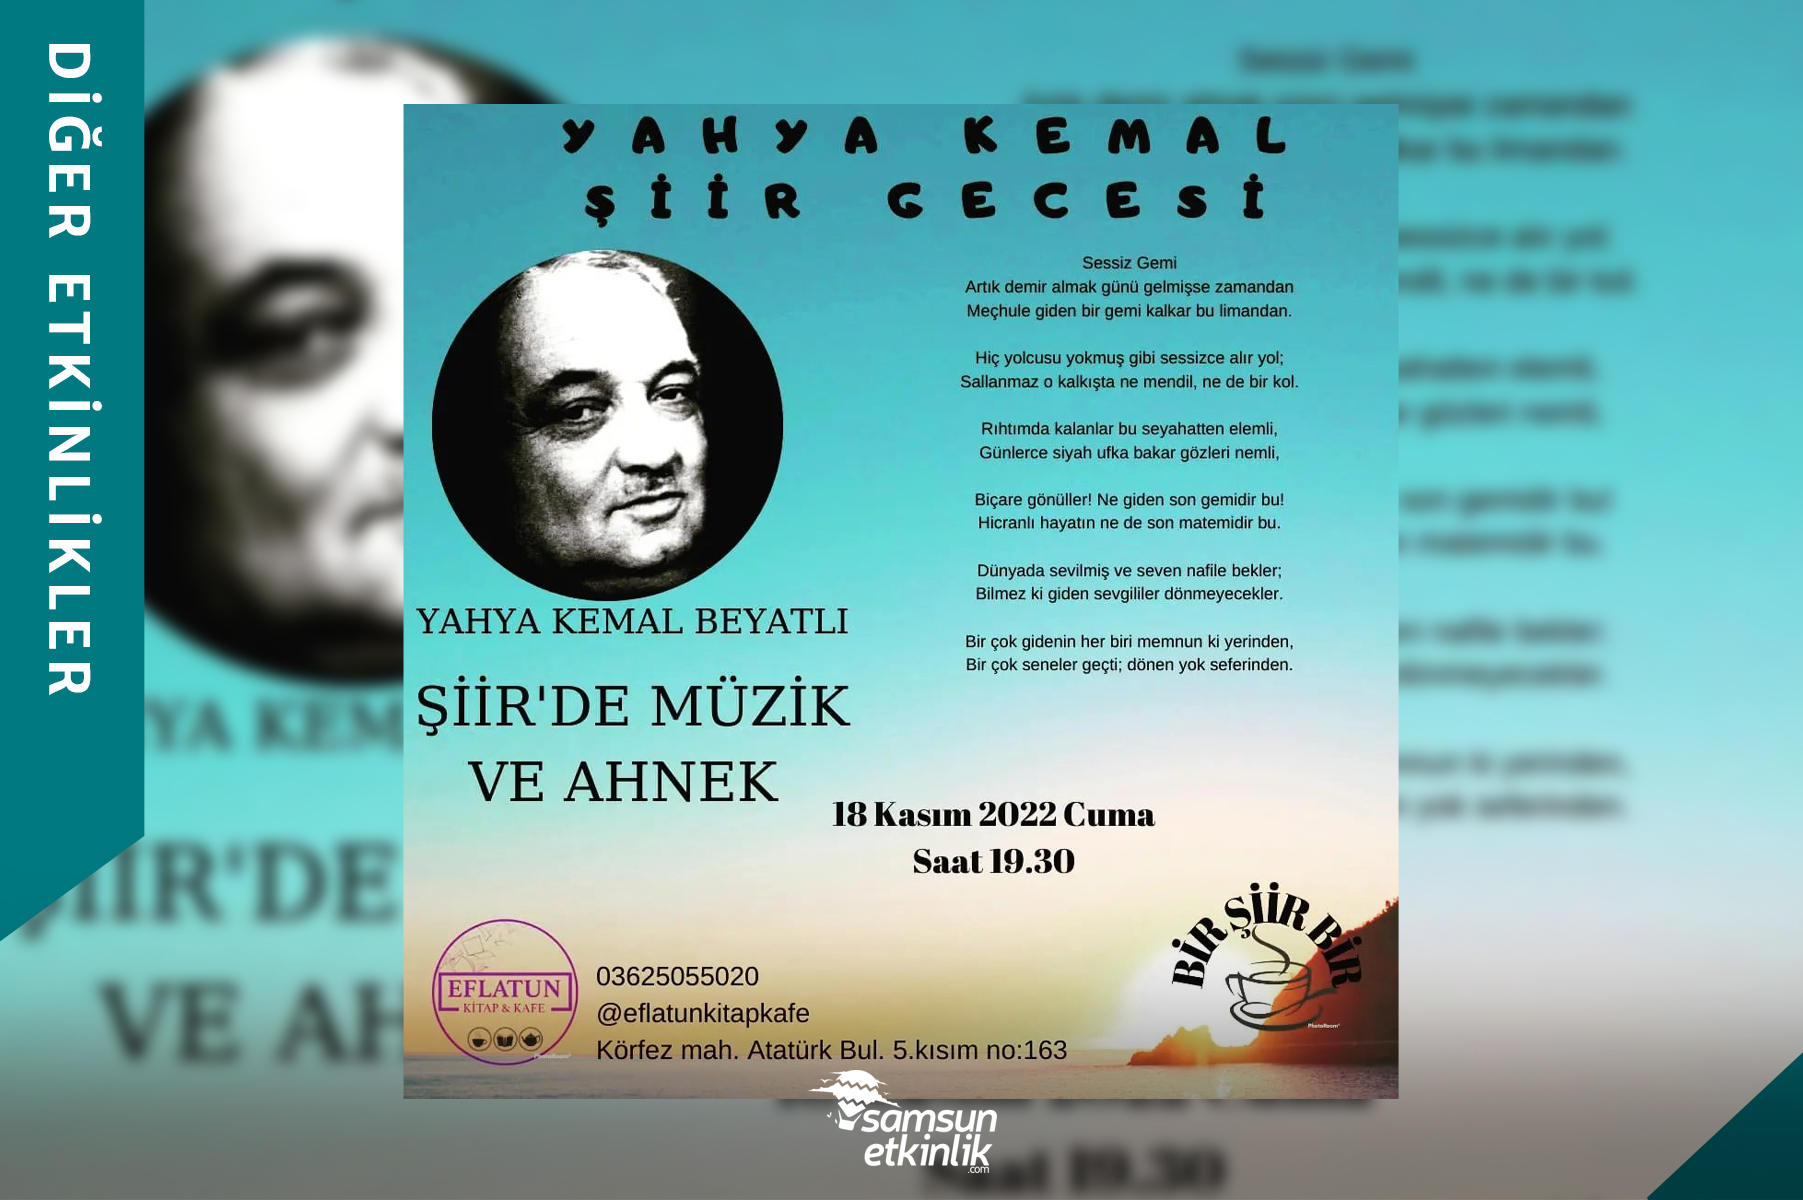 Herkesin kendi şiirleri ile katılabileceği, şiirde ahenk ve müzik temalı “Yahya Kemal Şiir Gecesi” 18 Kasım 2022 Cuma saat 19.30’da Eflatun Kitap & Kafe’de!